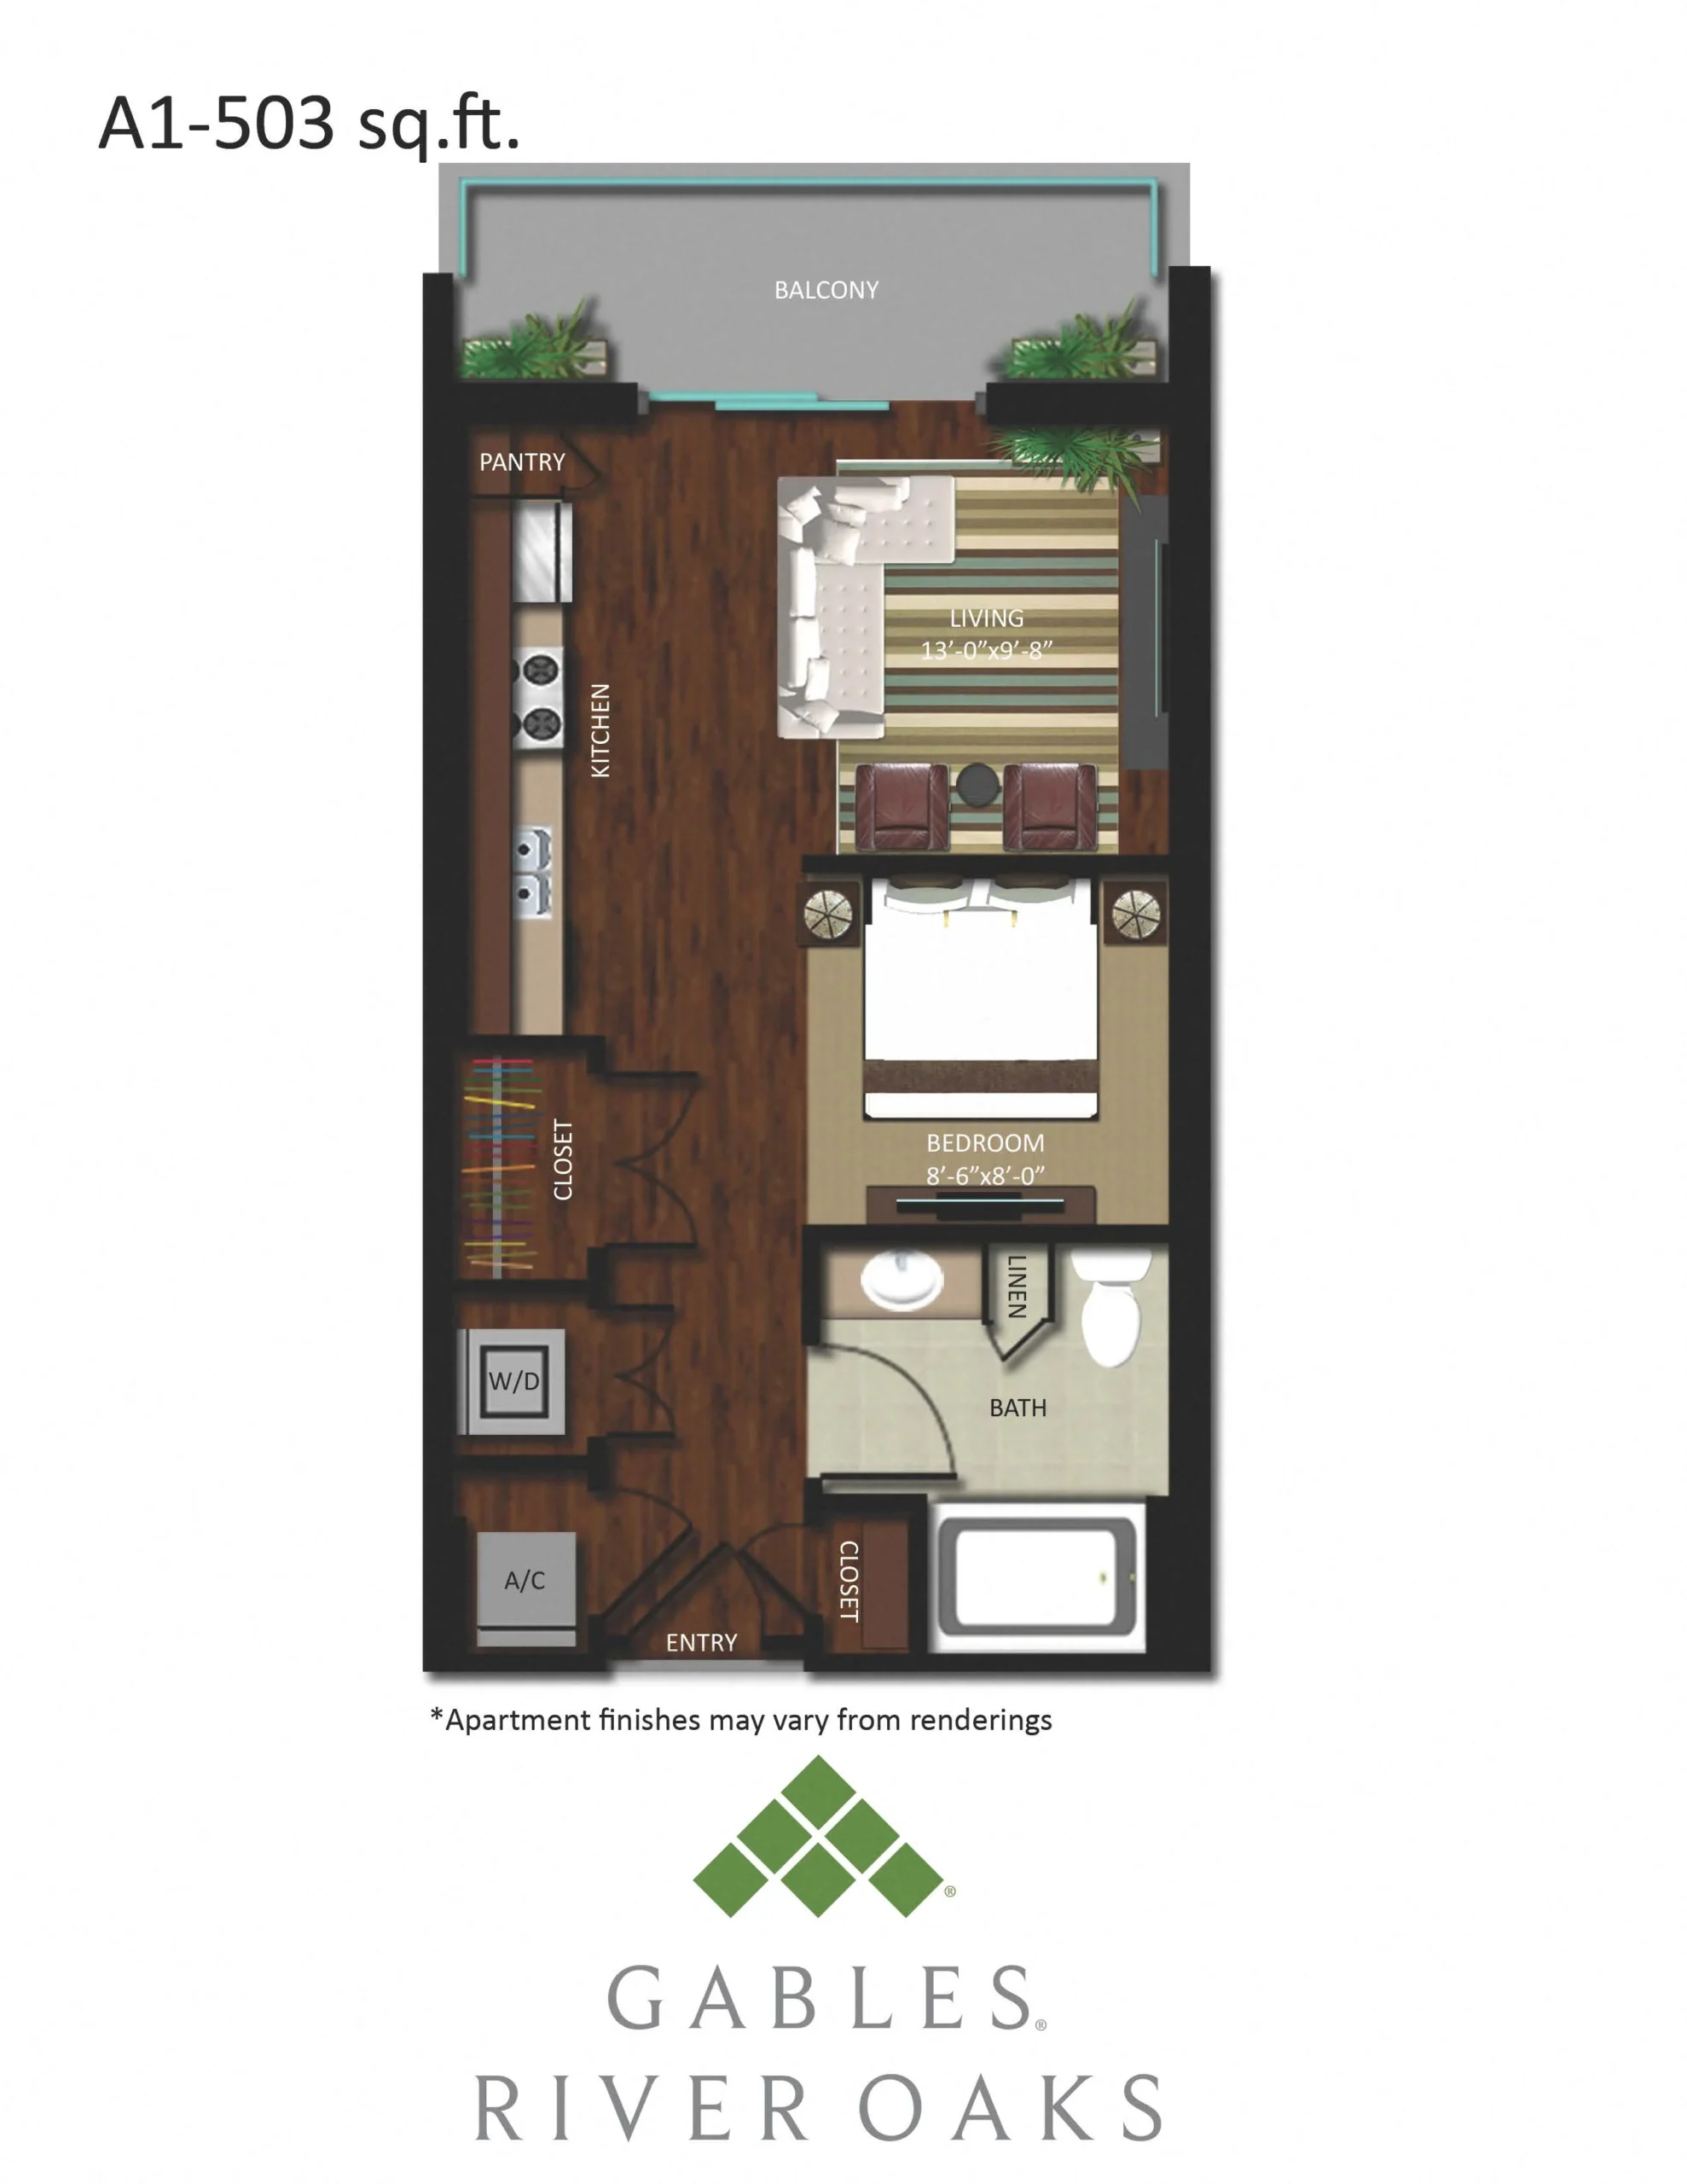 Gables River Oaks Floor Plan 1